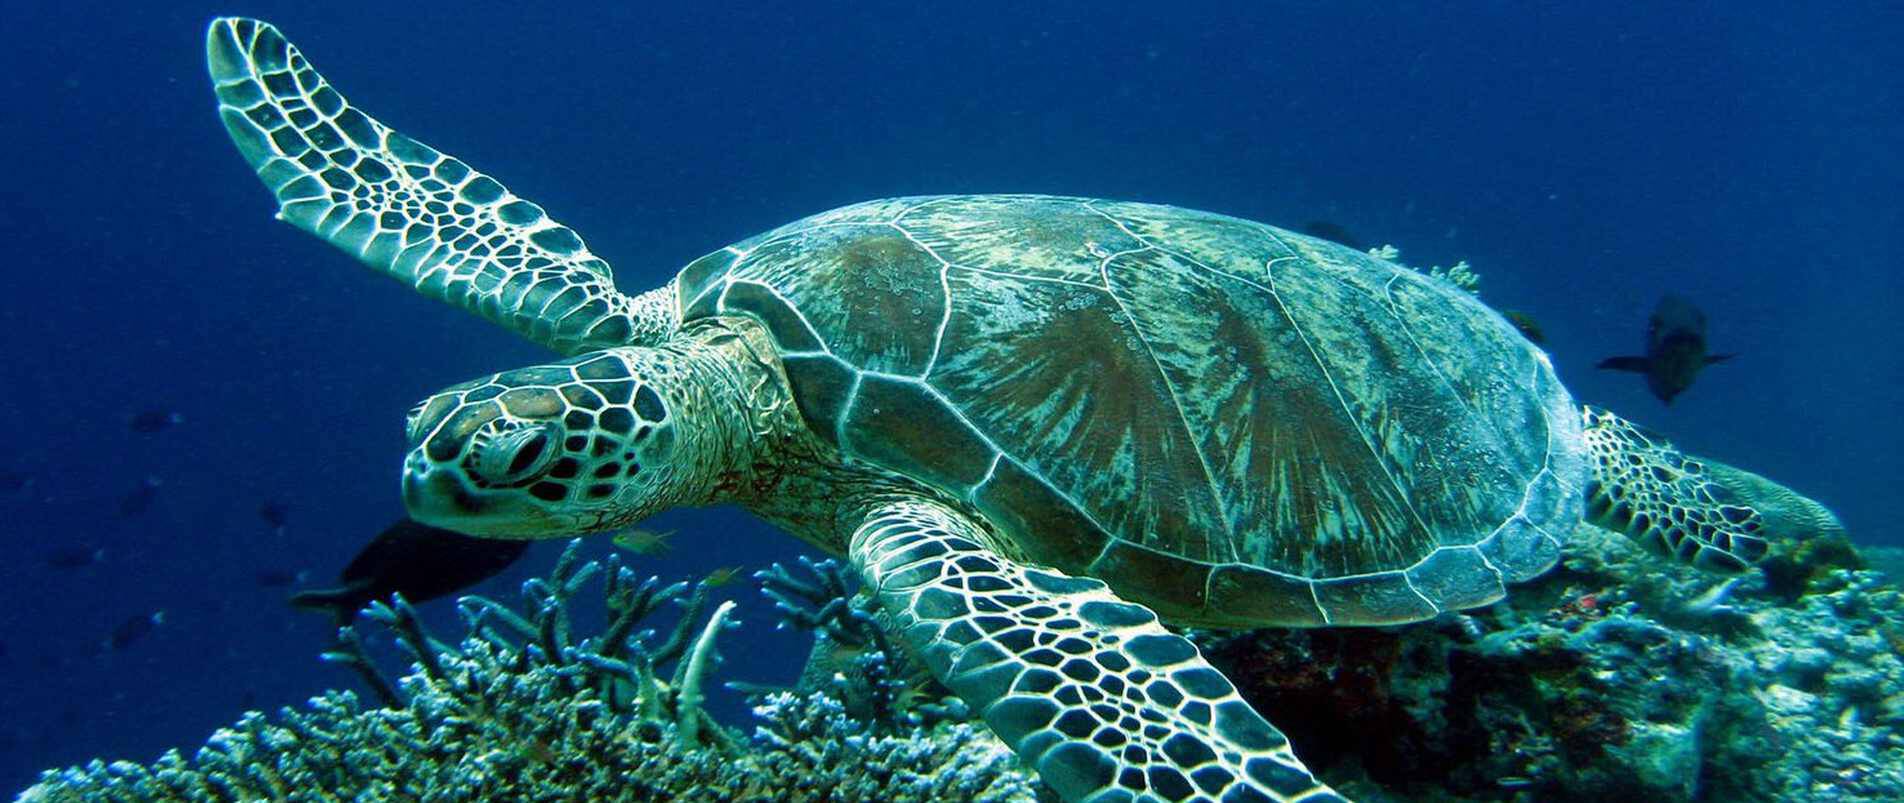 Σάλος με την είδηση ότι έδεσαν χελώνα στο Καστελόριζο για να τη δει ο Μητσοτάκης